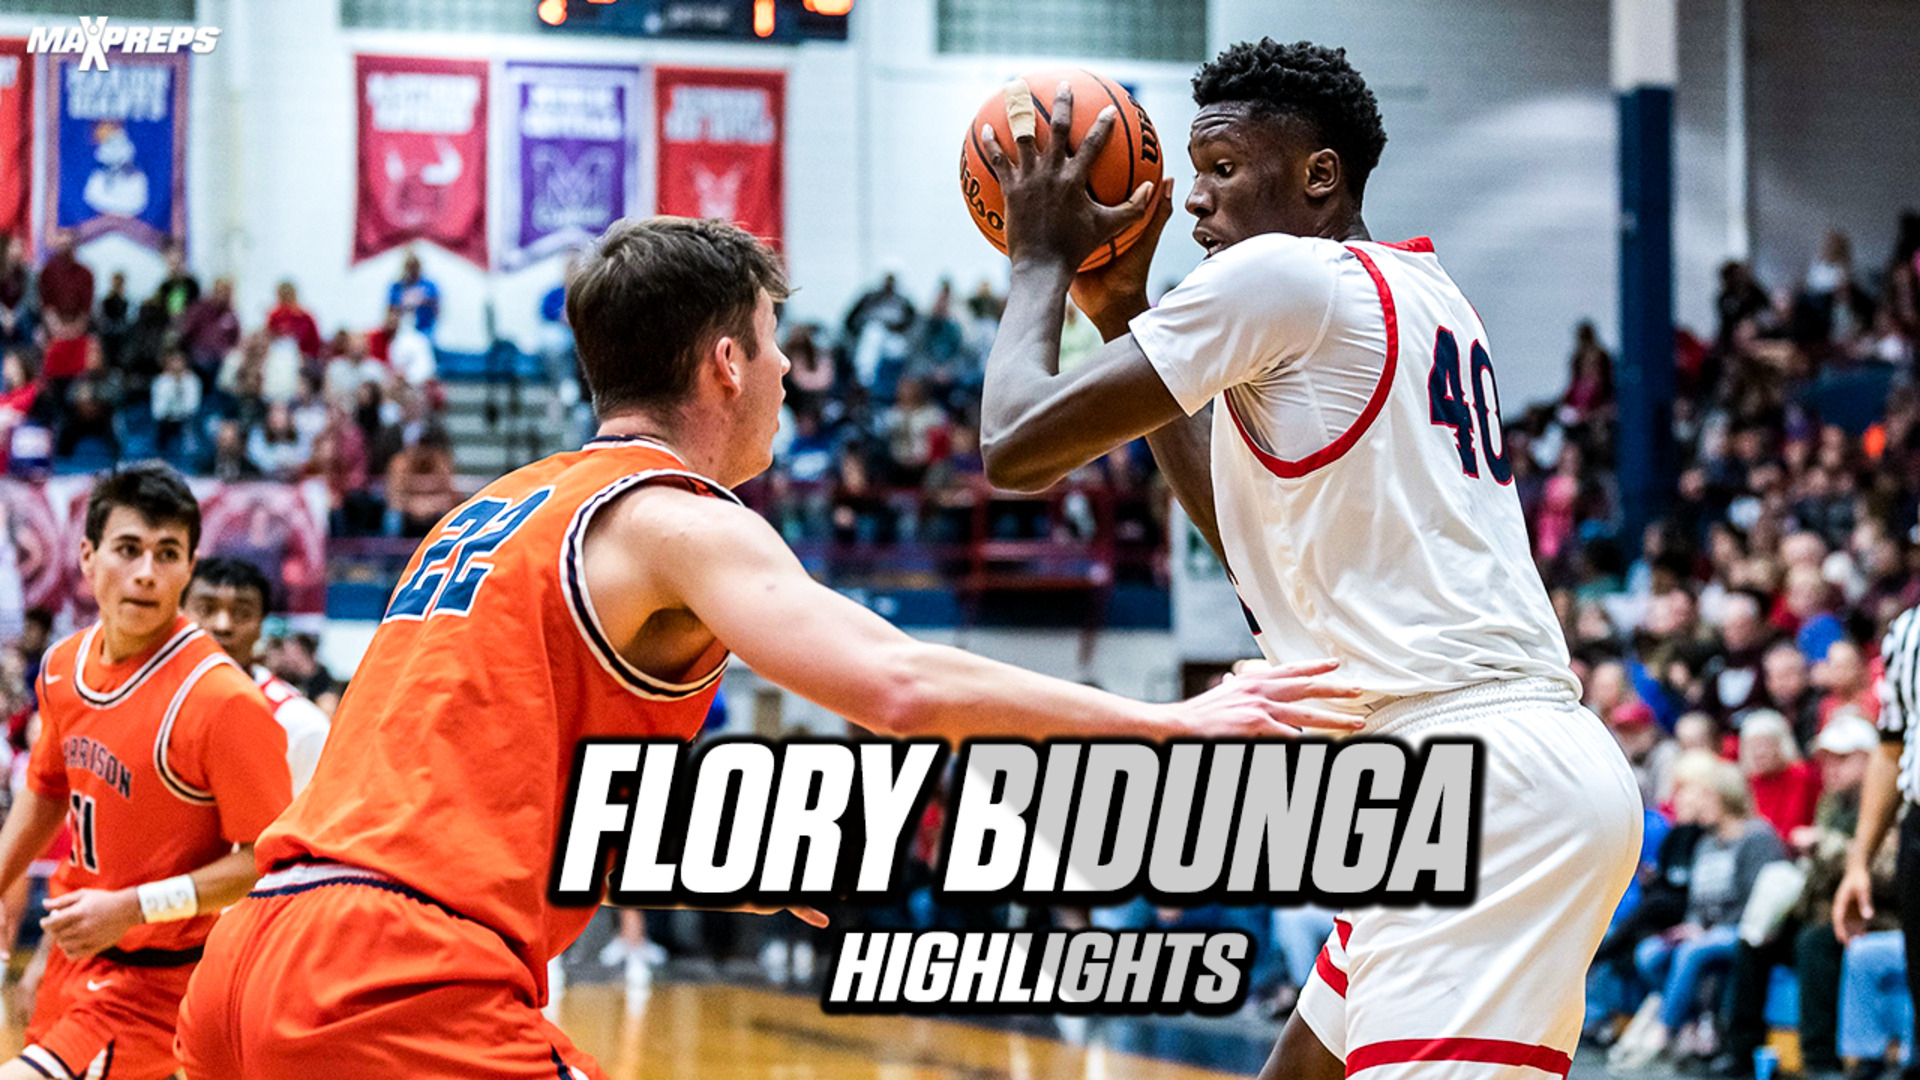 Flory Bidunga Highlights '24